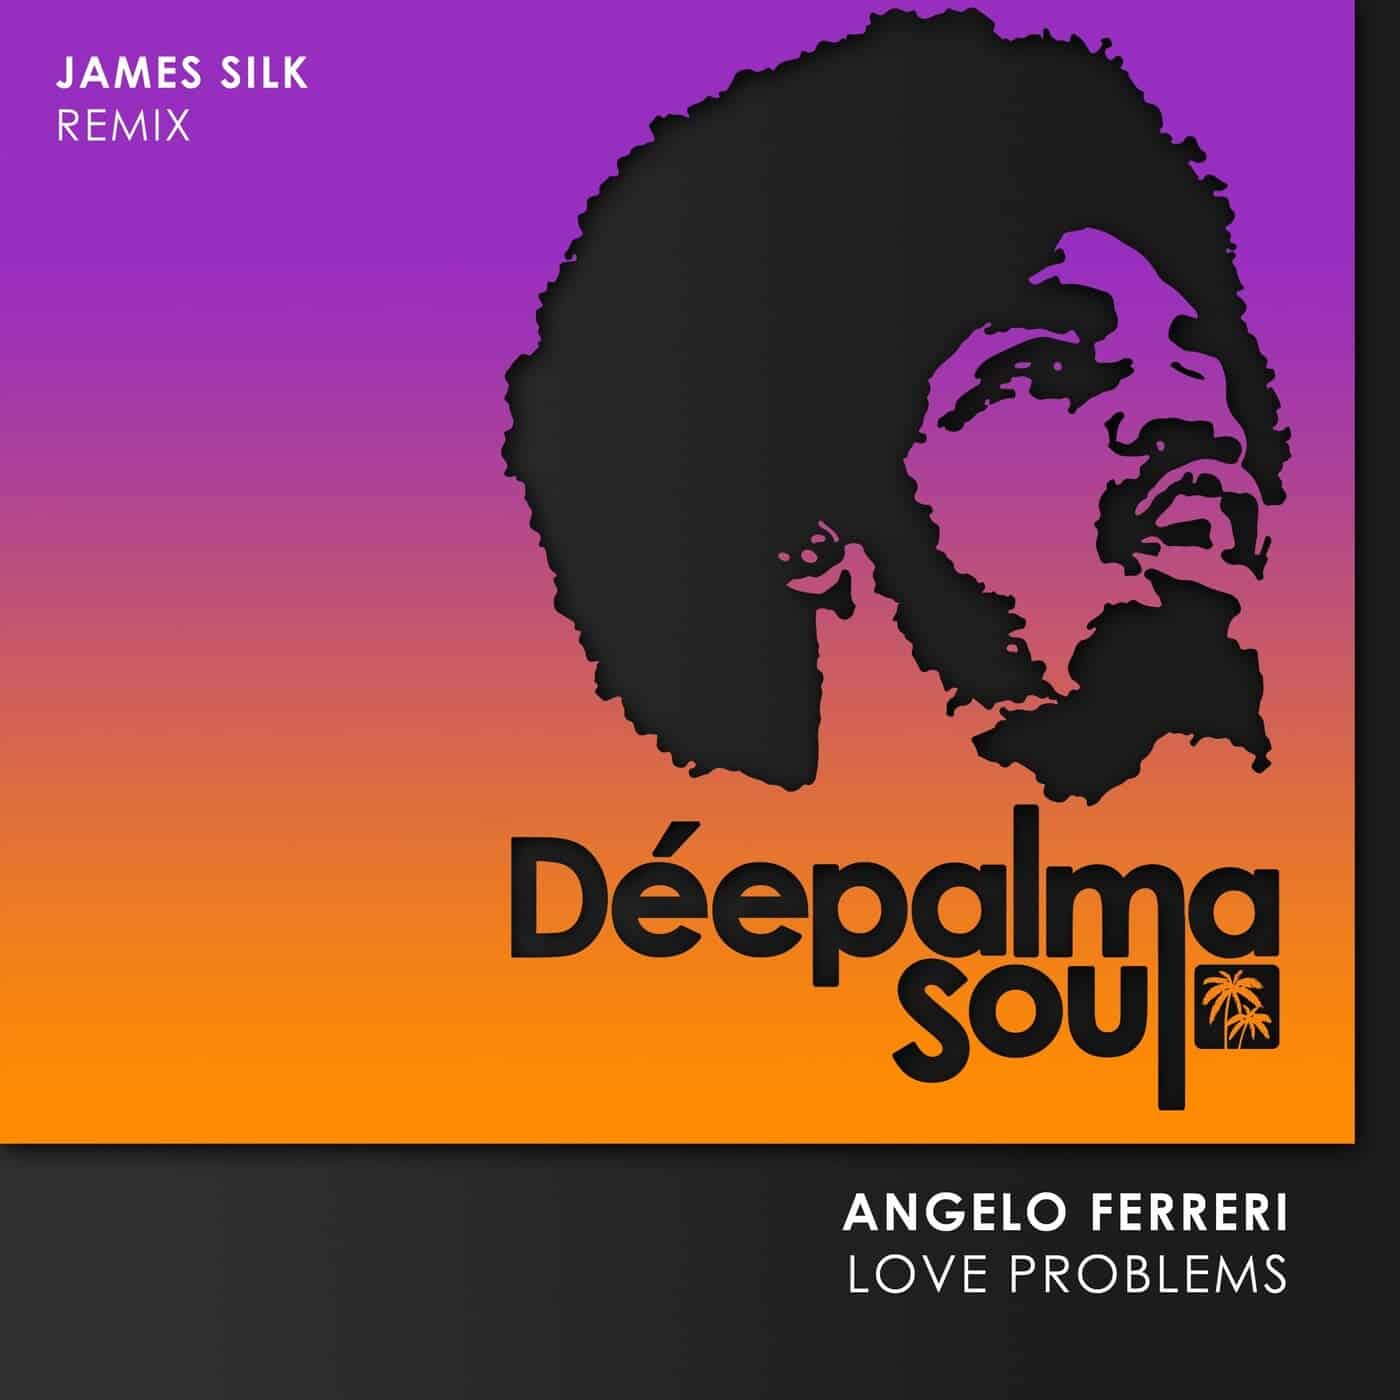 Télécharger Angelo Ferreri - Love Problems (James Silk Remix) sur Electrobuzz